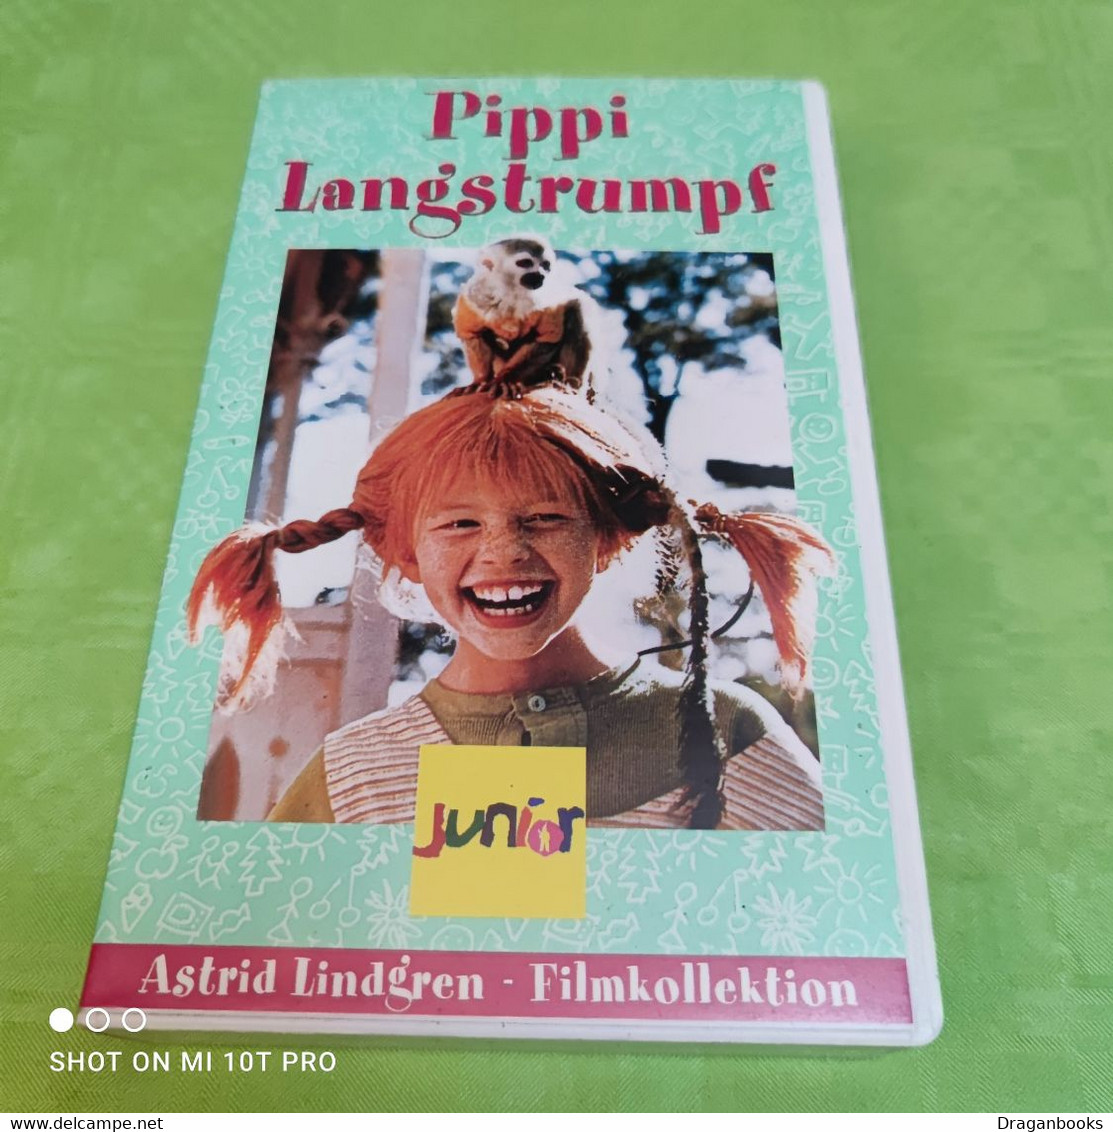 Pippi Langstrumpf - Kinder & Familie